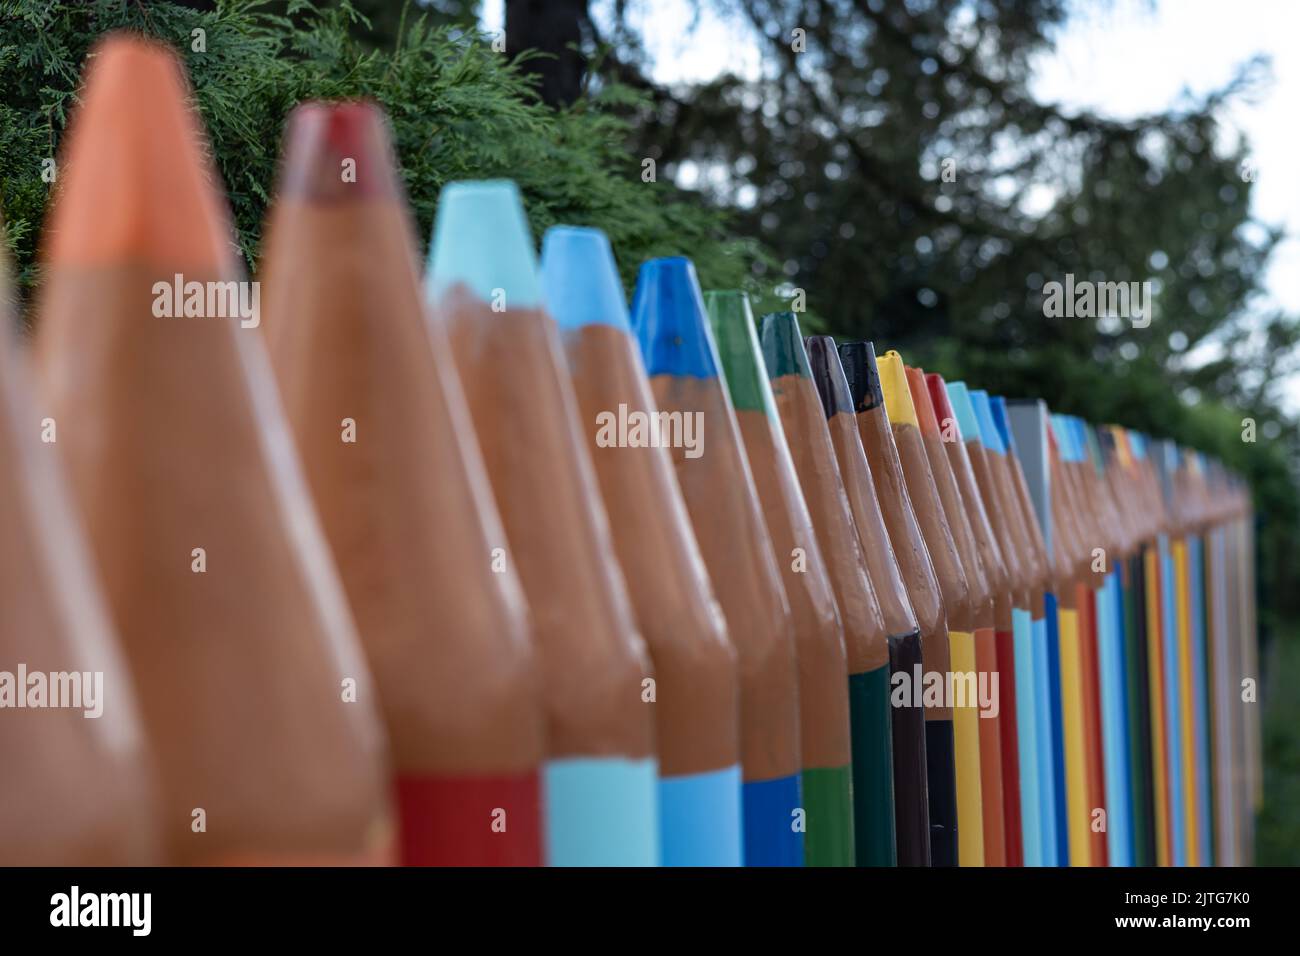 clôture à crayons de couleur école maternelle bleu orange vert Banque D'Images